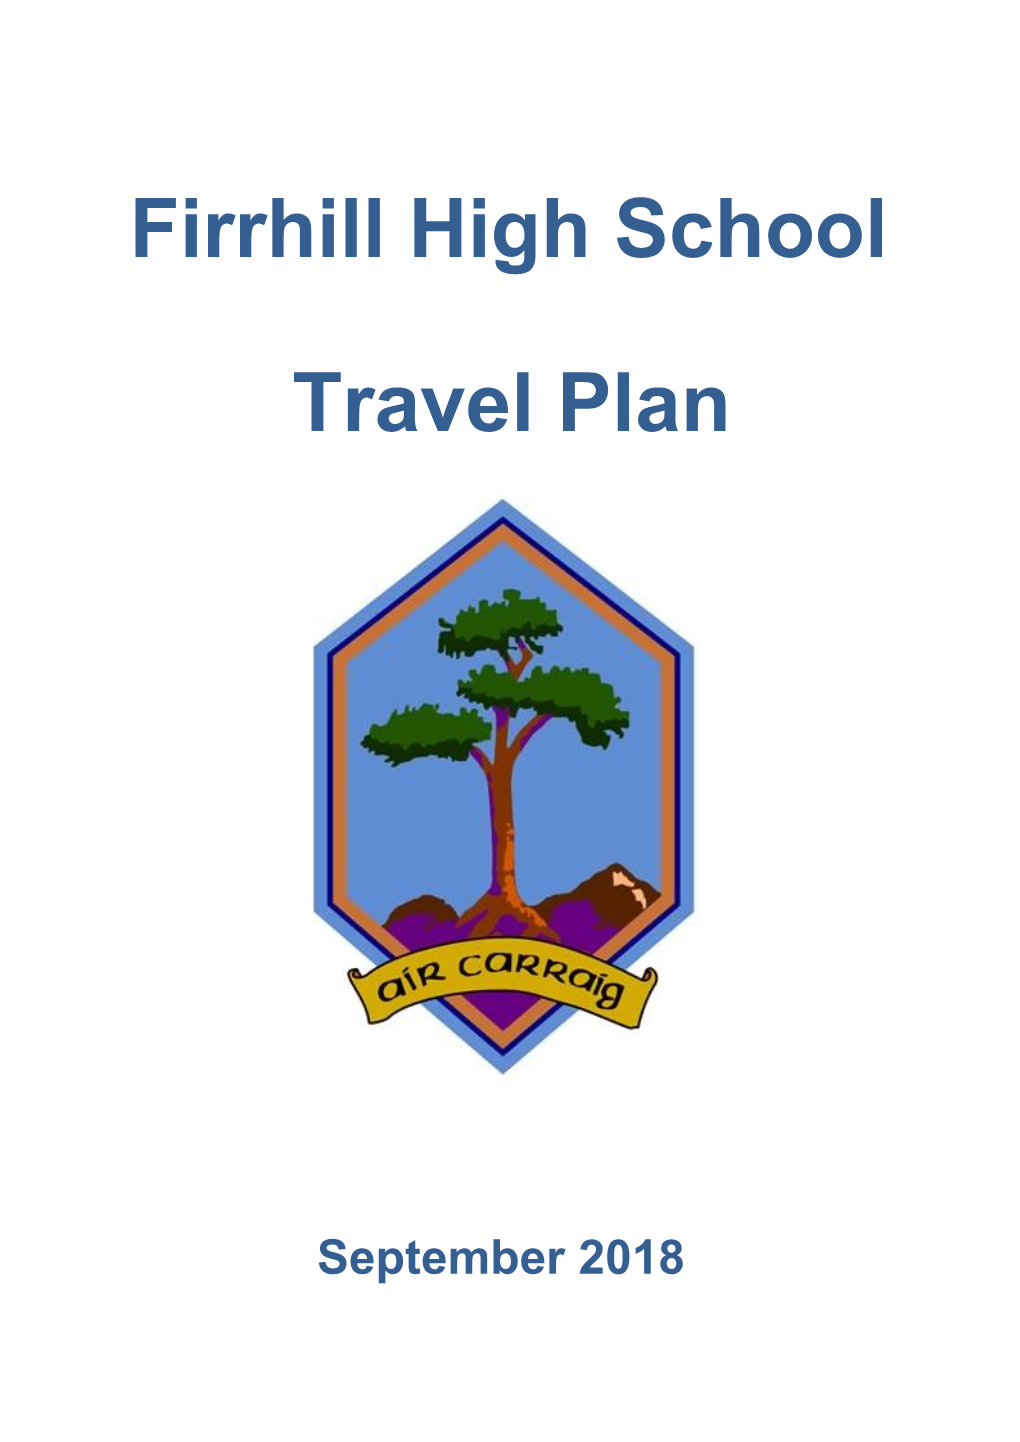 Firrhill High School Travel Plan 2018